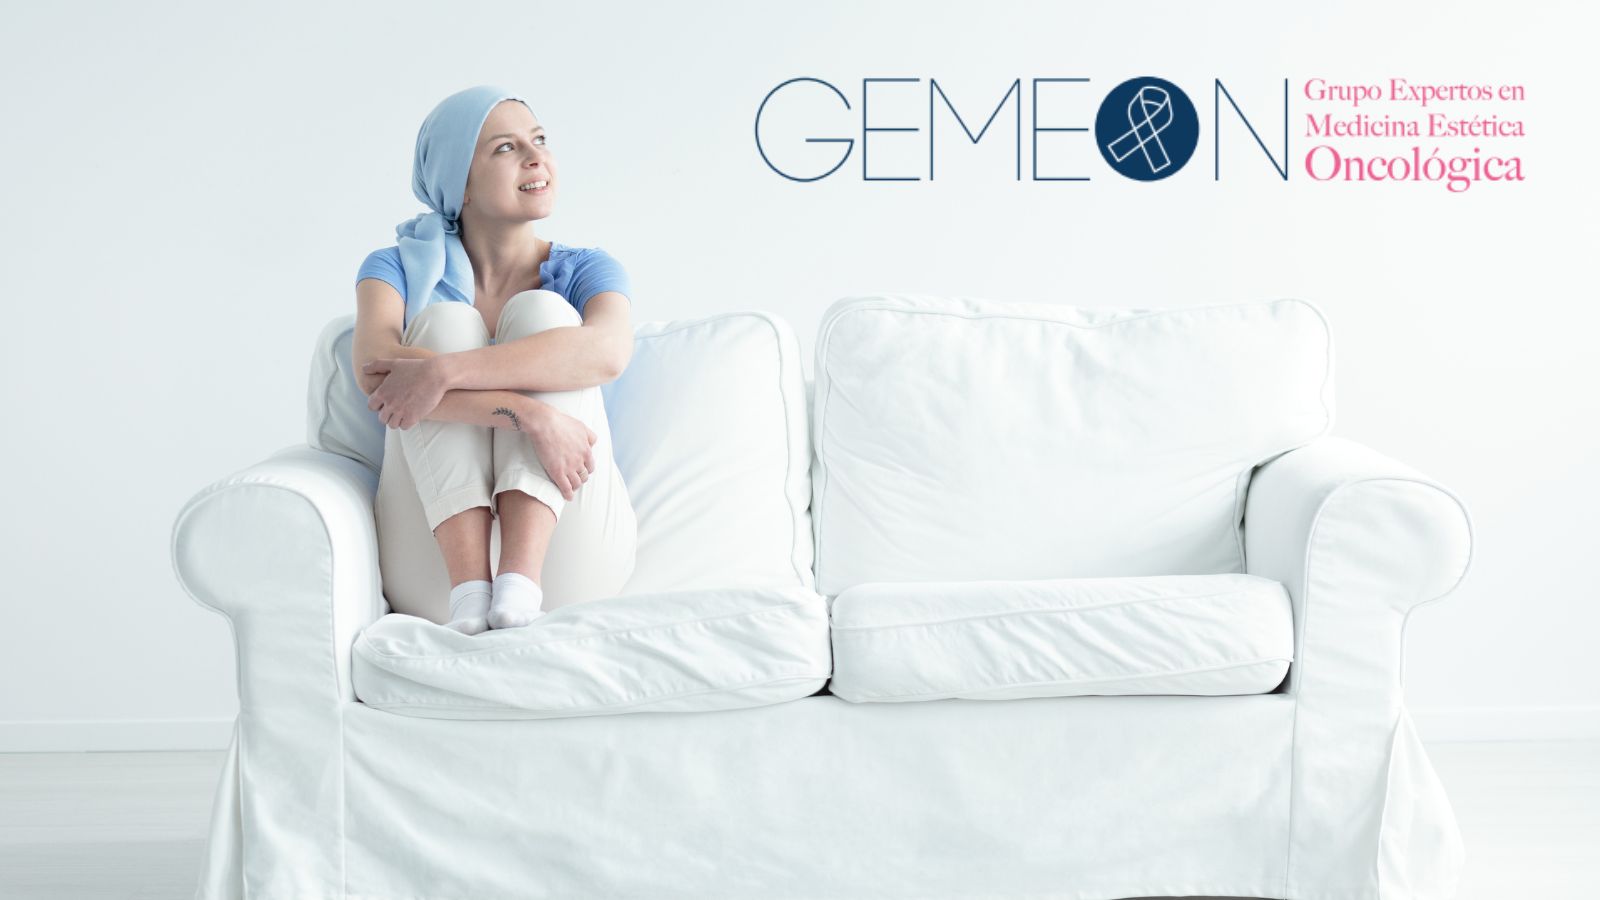 V Jornada de introducción a la estética oncológica GEMEON